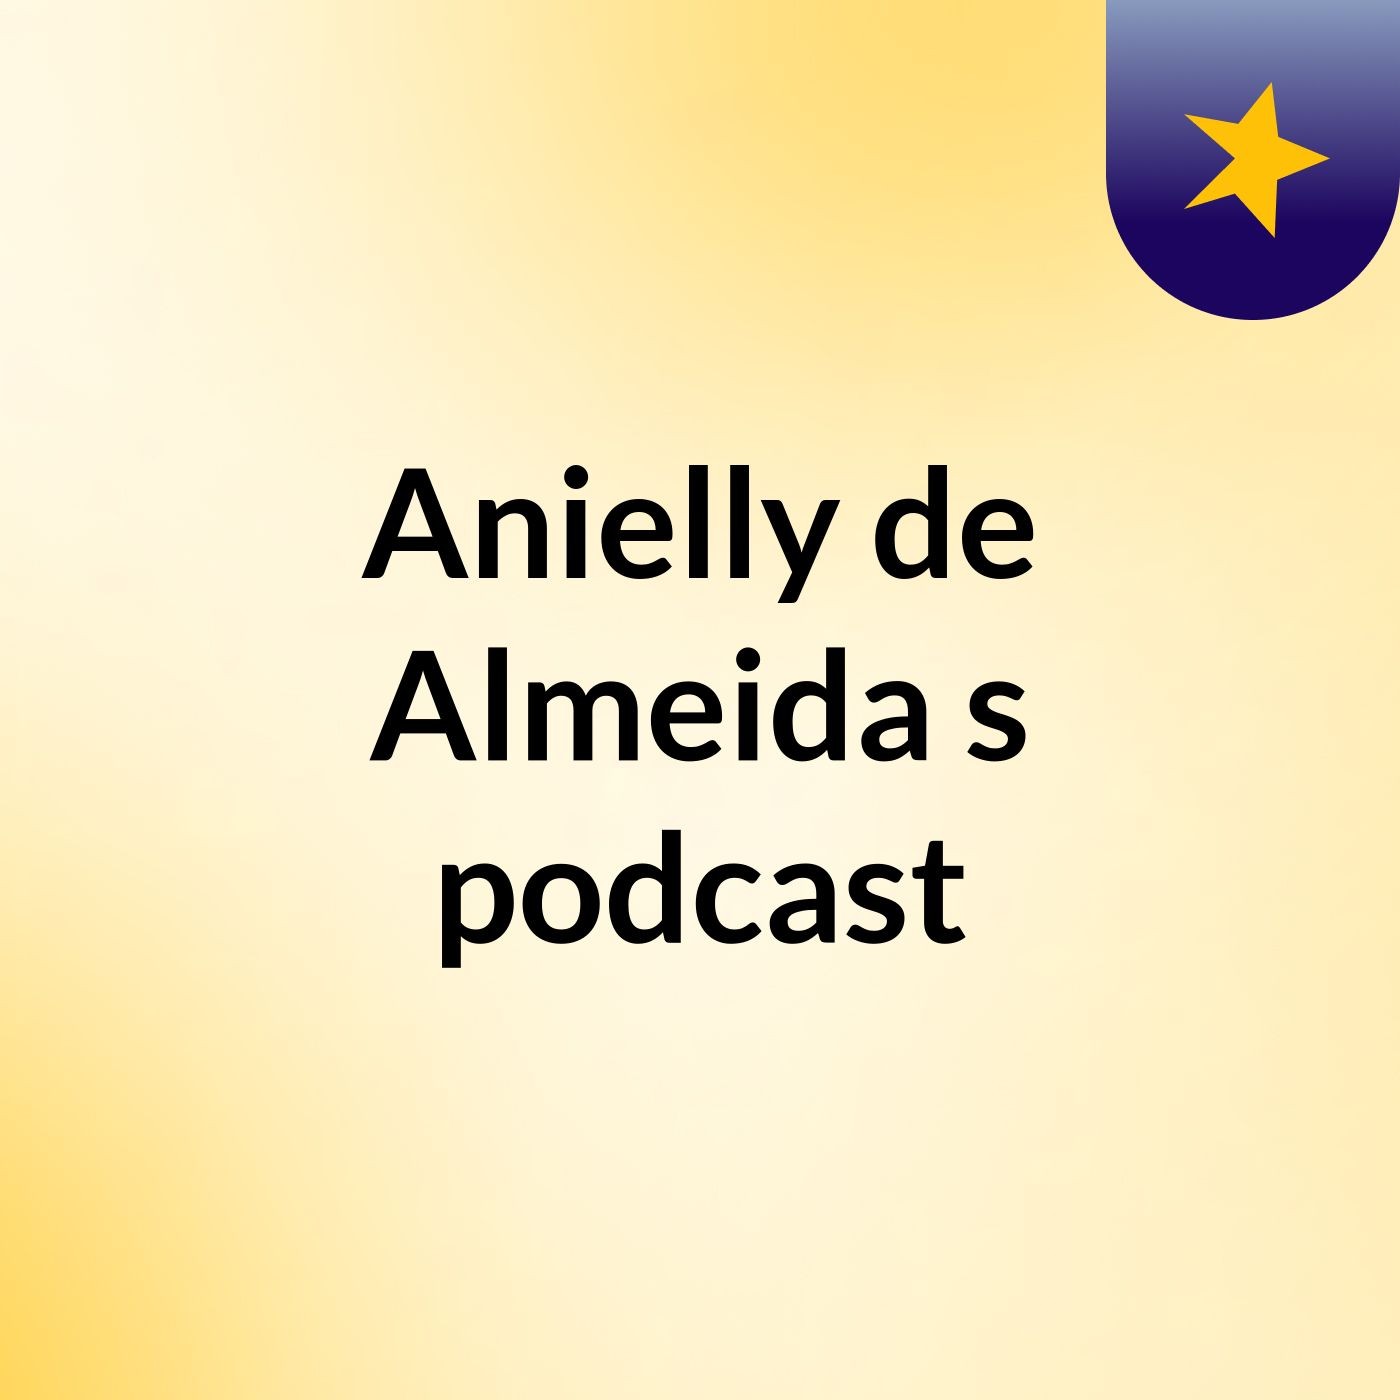 Anielly de Almeida's podcast